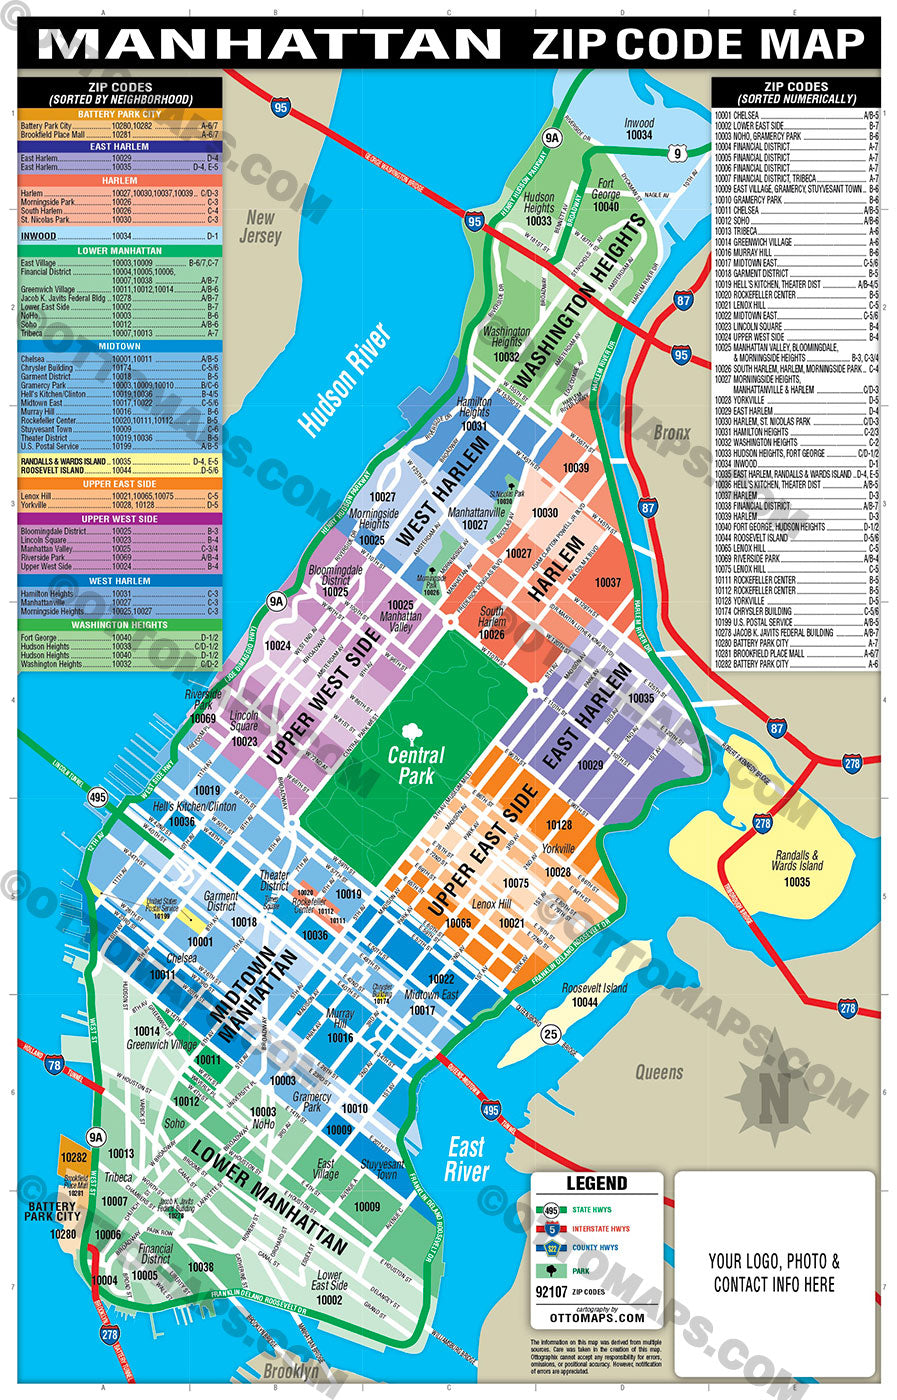 Upper East Side, NYC [Neighborhood Guide]